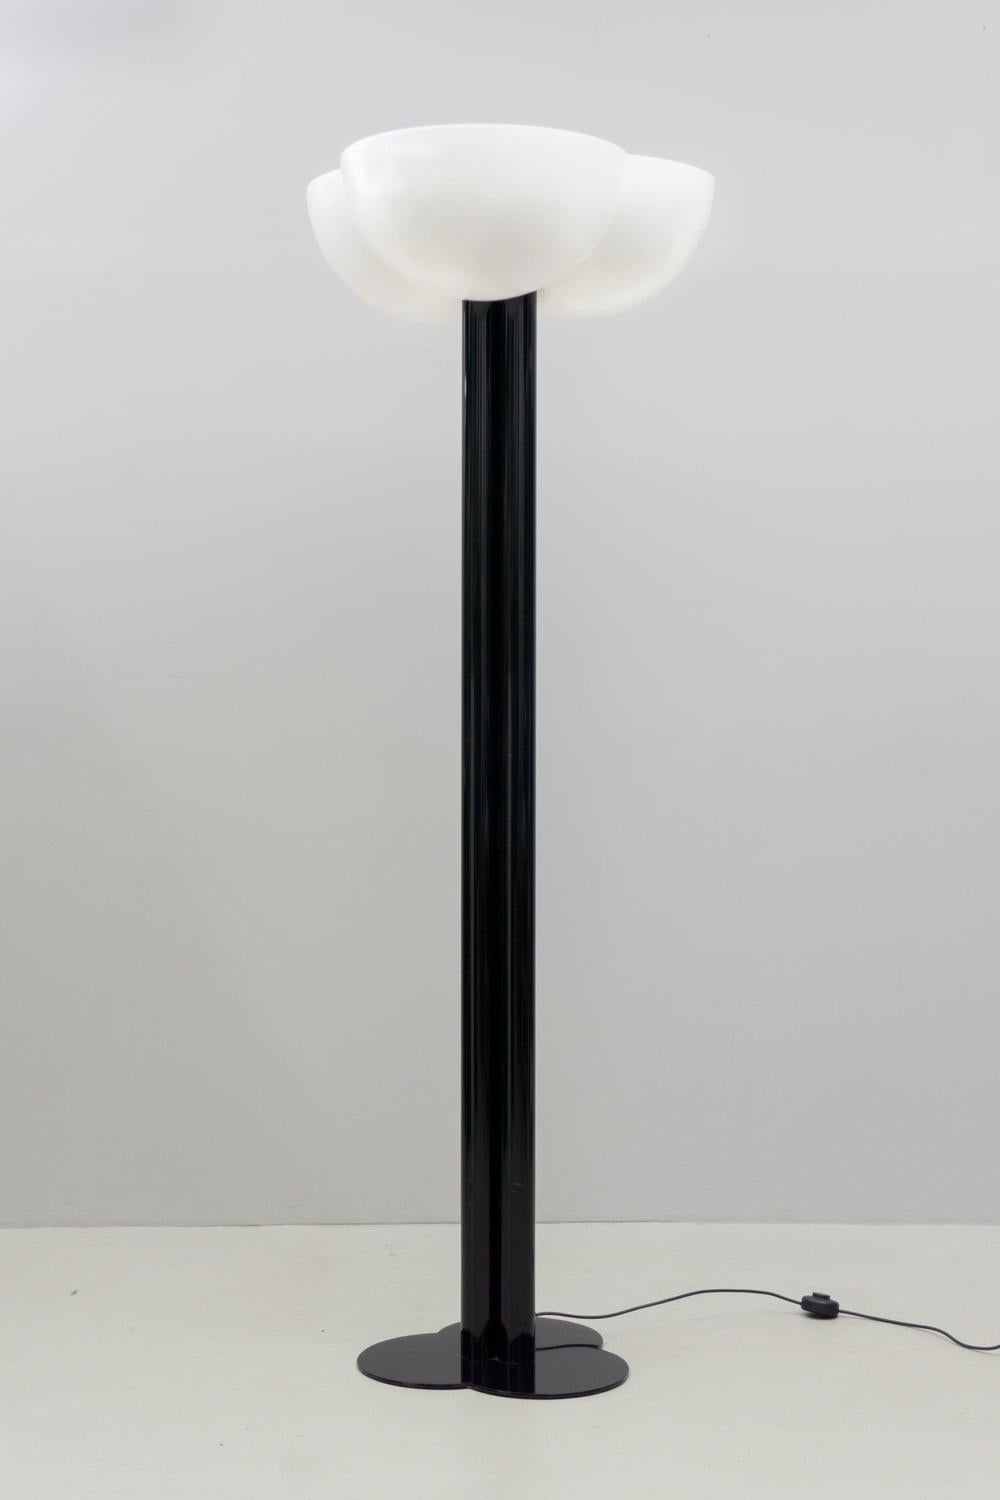 Cet impressionnant lampadaire est fabriqué en métal émaillé noir, son réflecteur à trois convexités est en acrylique blanc translucide. 
_
sergio Asti (né en 1926) est un designer et architecte italien, principalement connu pour ses créations